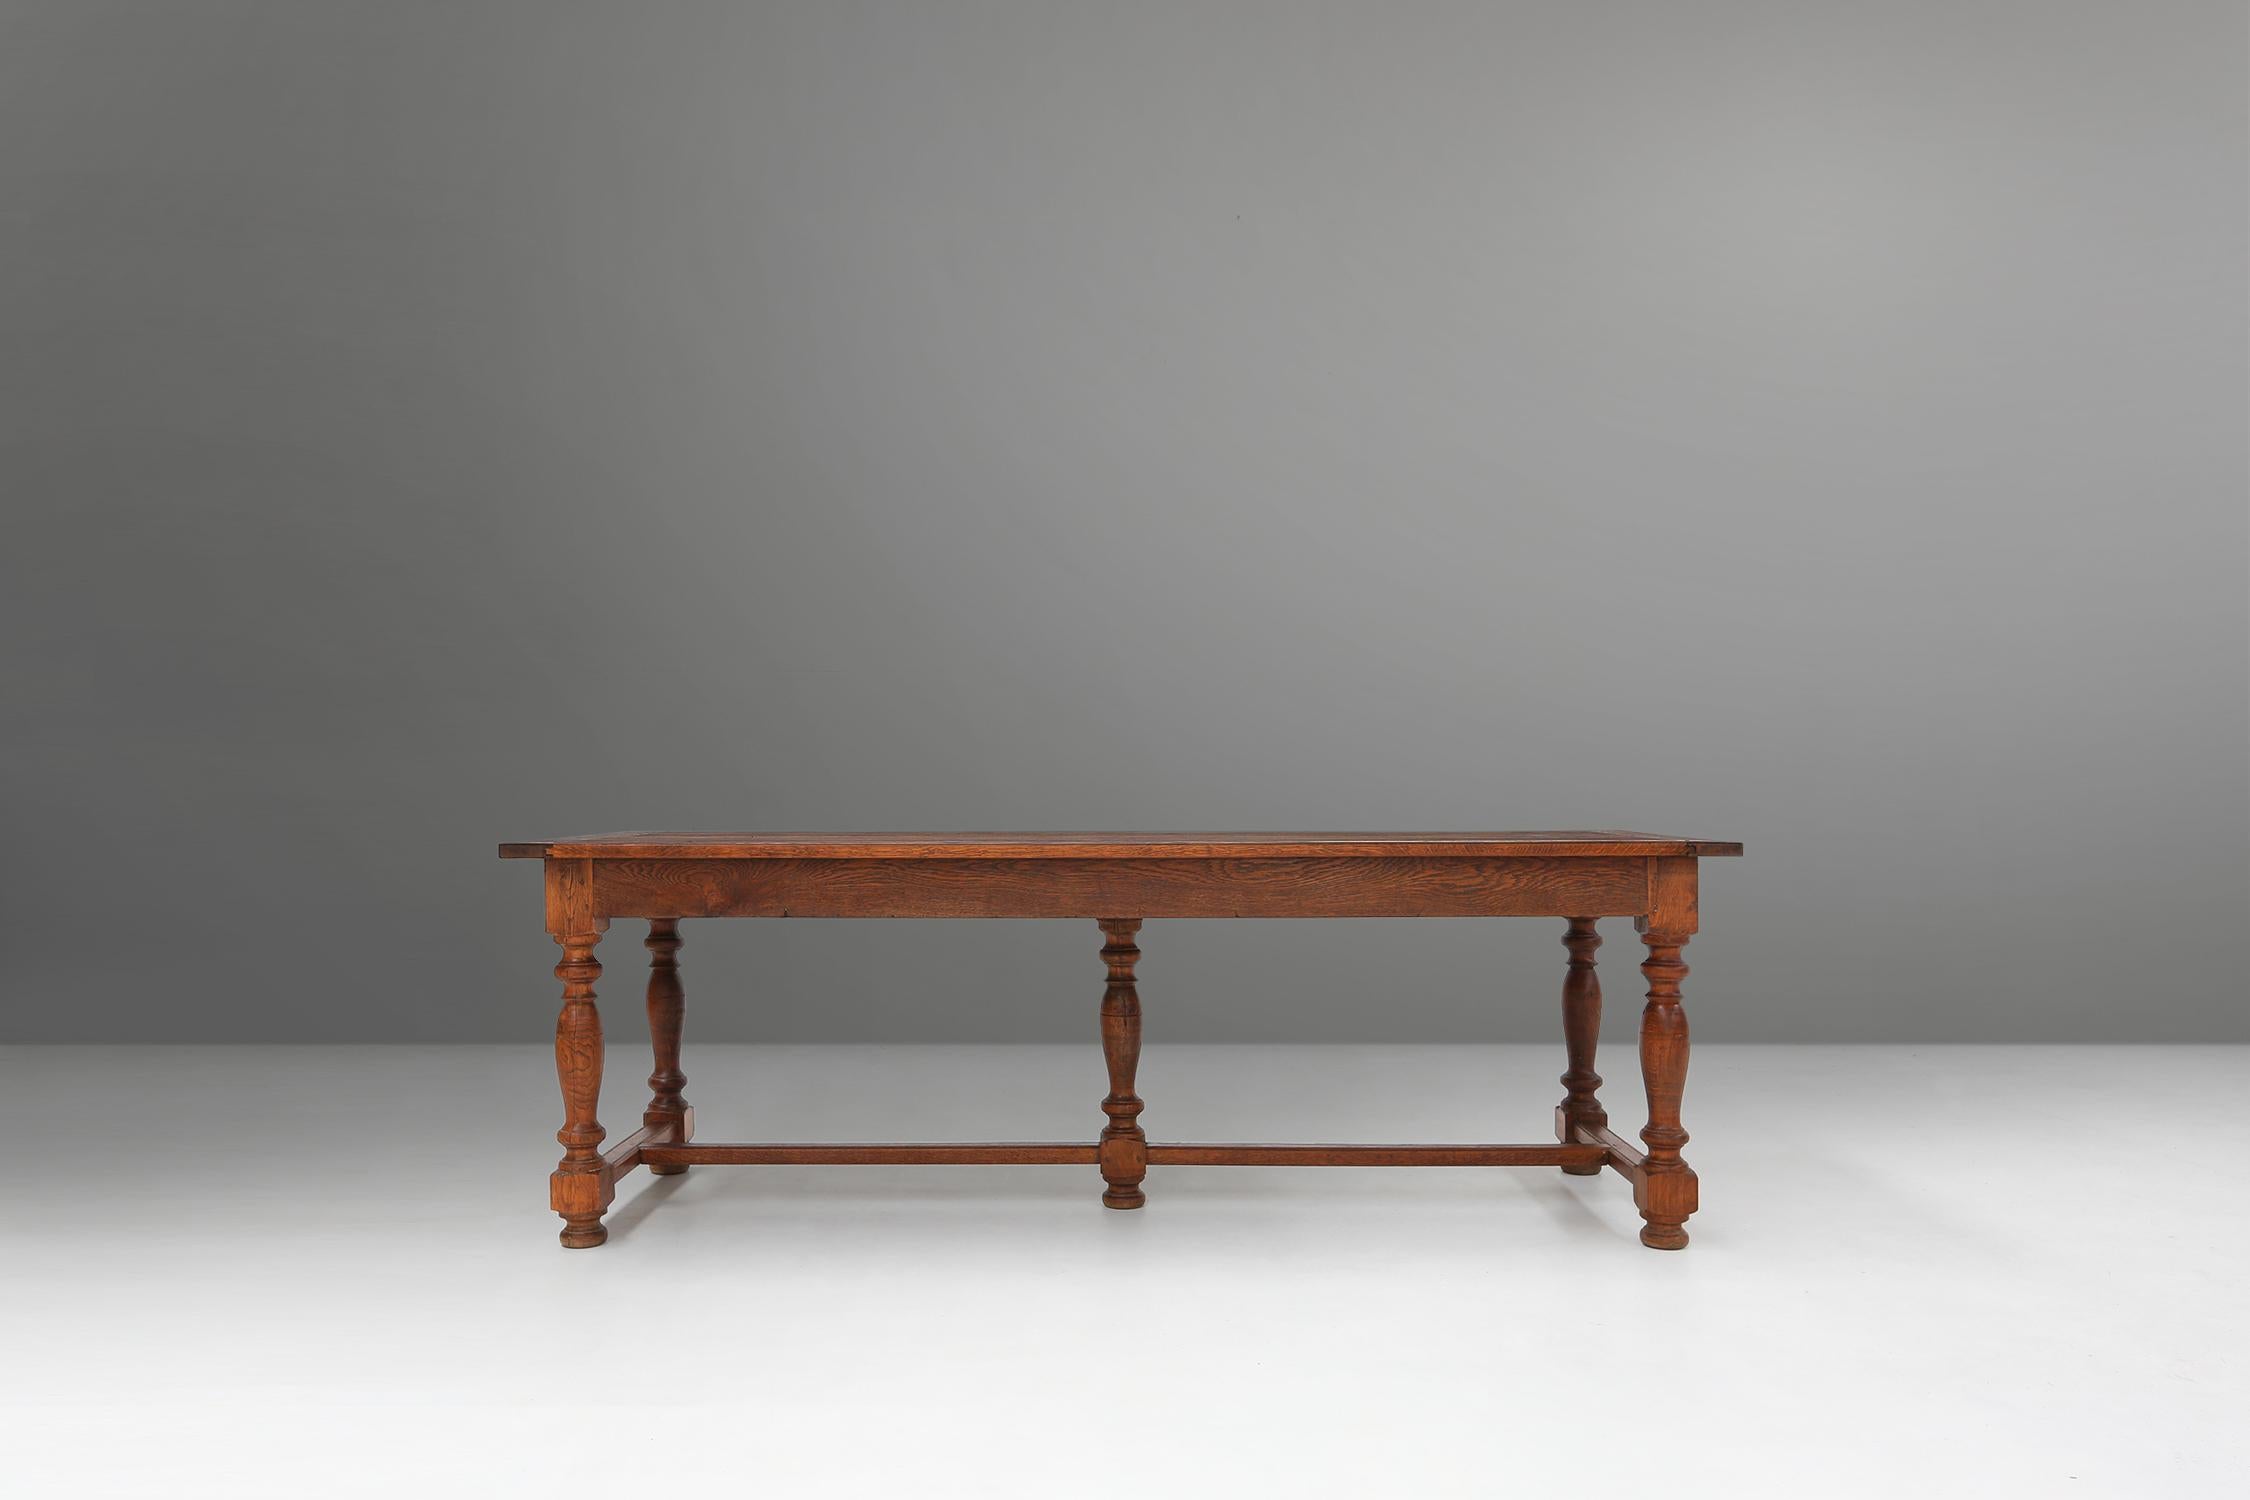 Cette table est fabriquée vers les années 1930 en chêne massif et présente une belle finition brune. La table a un plateau rectangulaire et cinq pieds tournés avec des détails sphériques. Deux tiroirs se trouvent de part et d'autre de la table, où